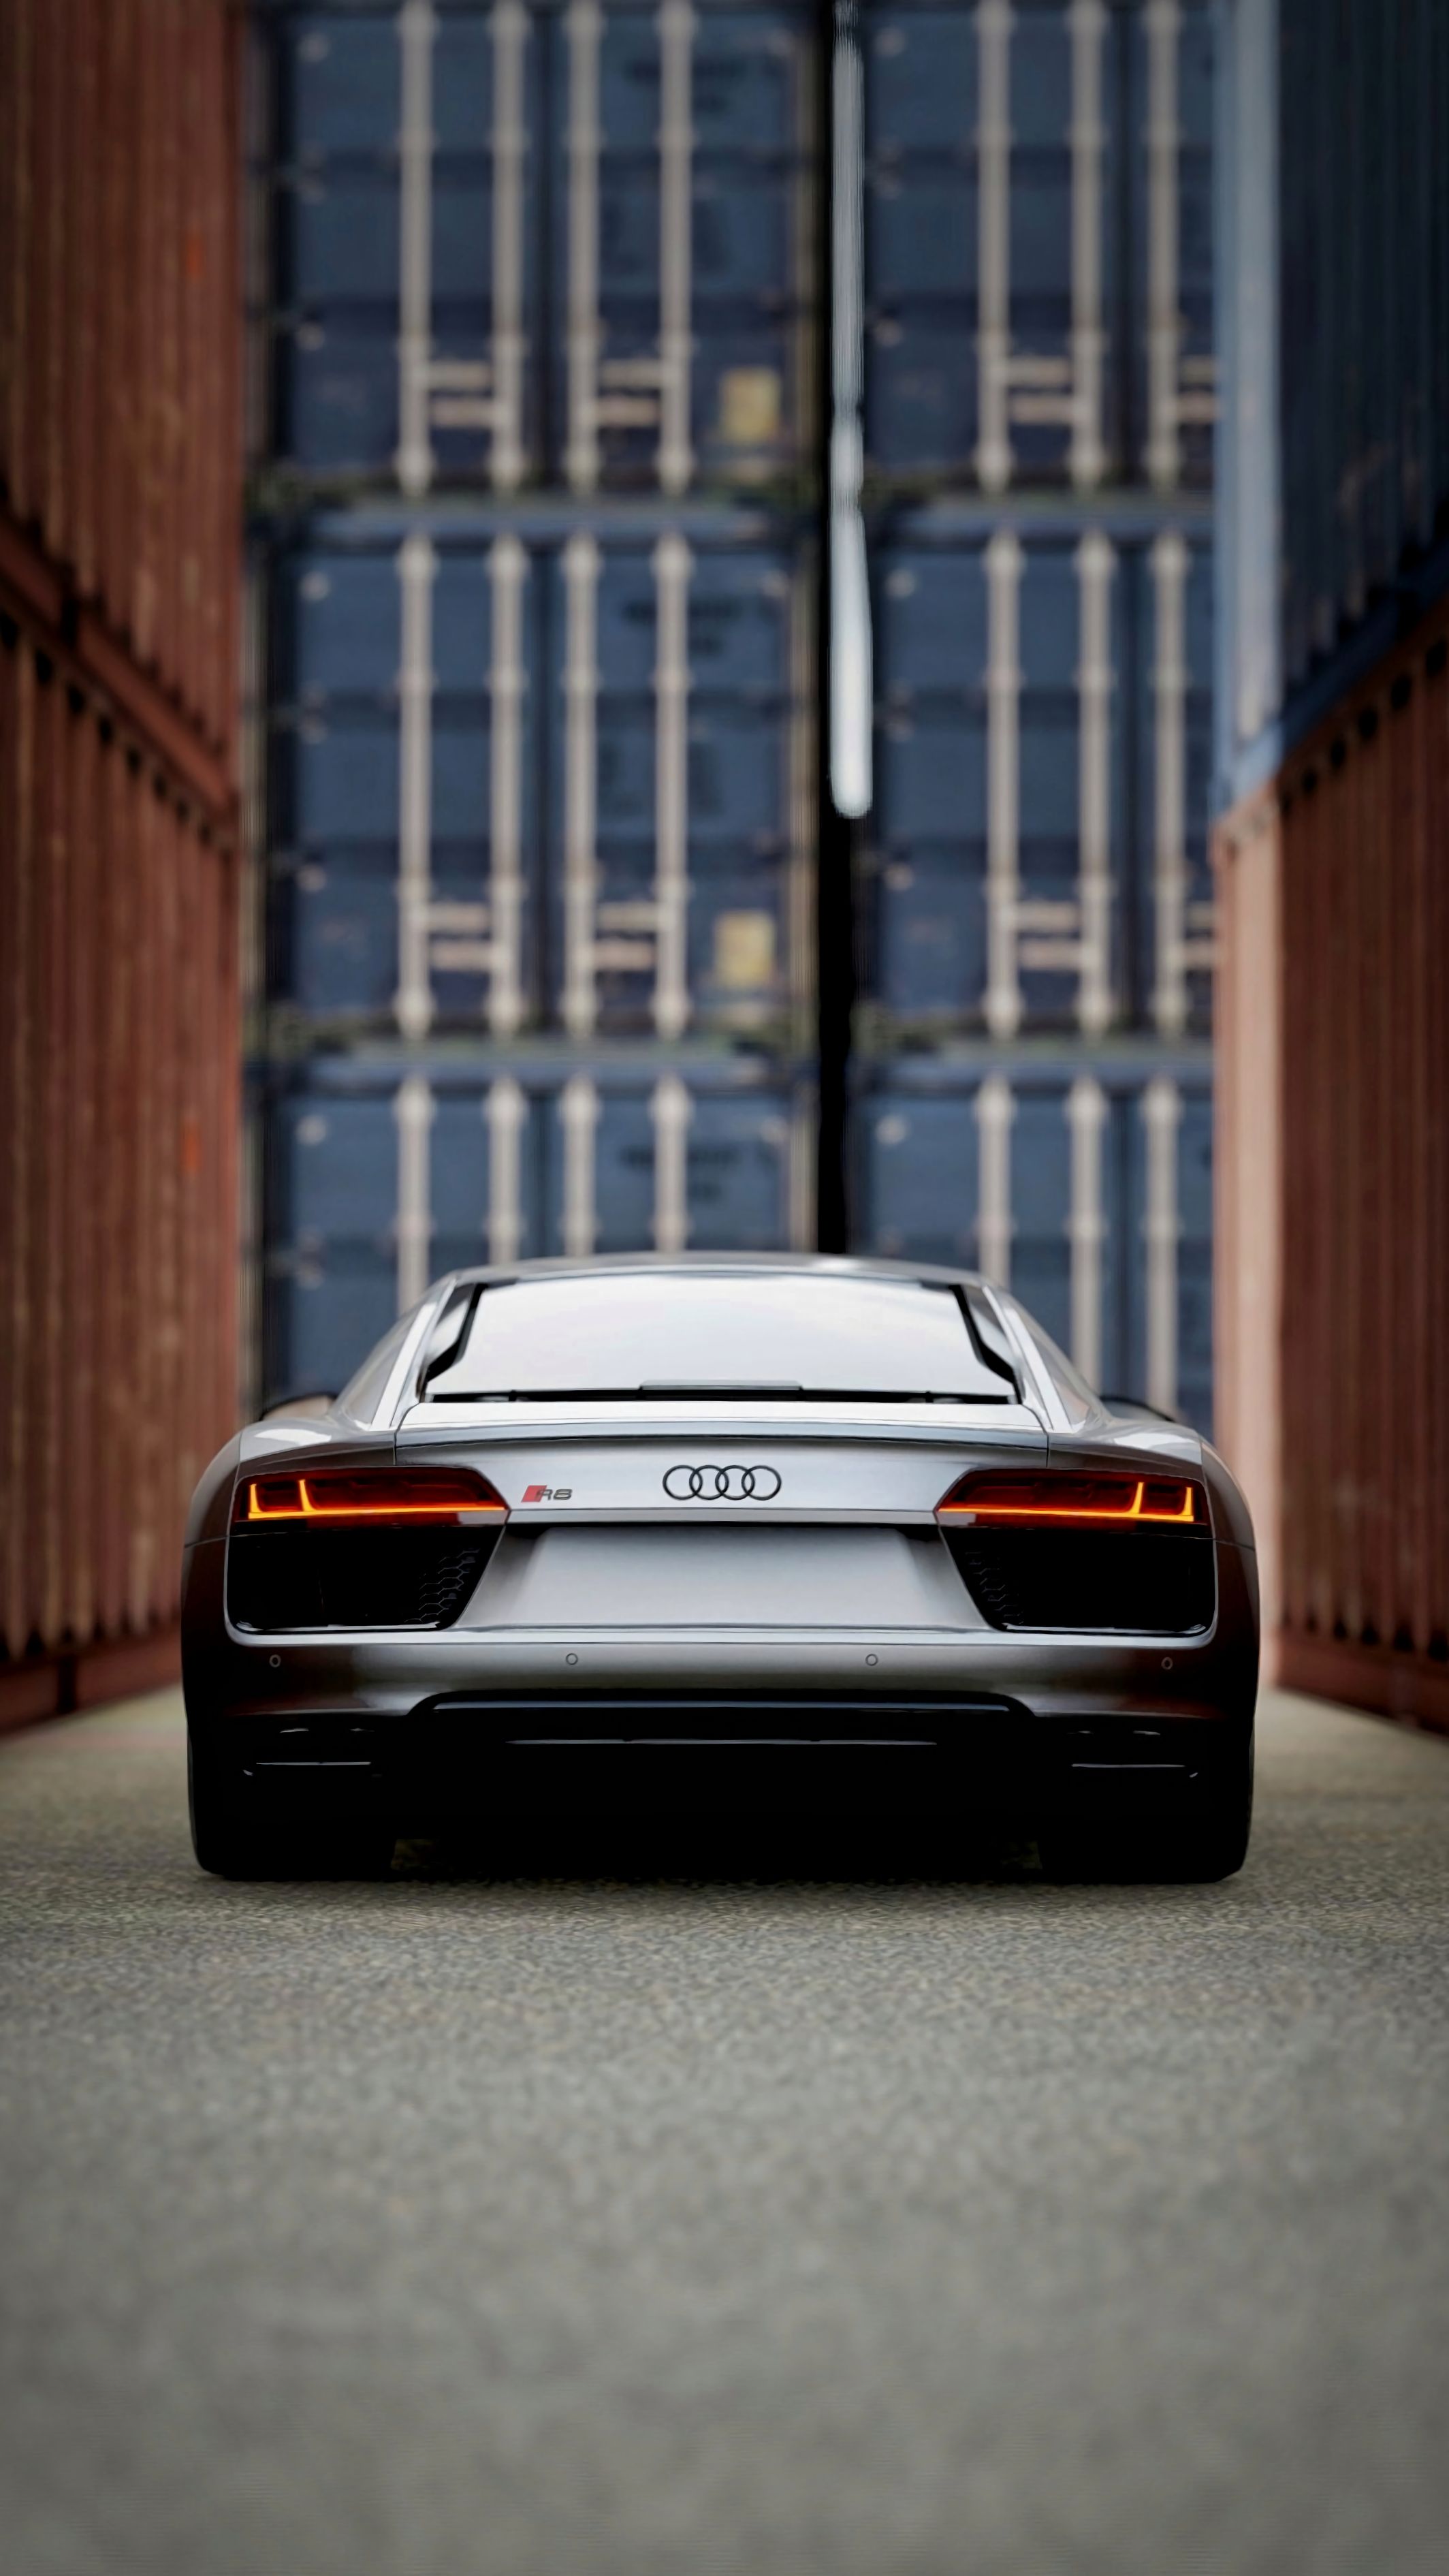 Descargar las imágenes de Audi gratis para teléfonos Android y iPhone,  fondos de pantalla de Audi para teléfonos móviles